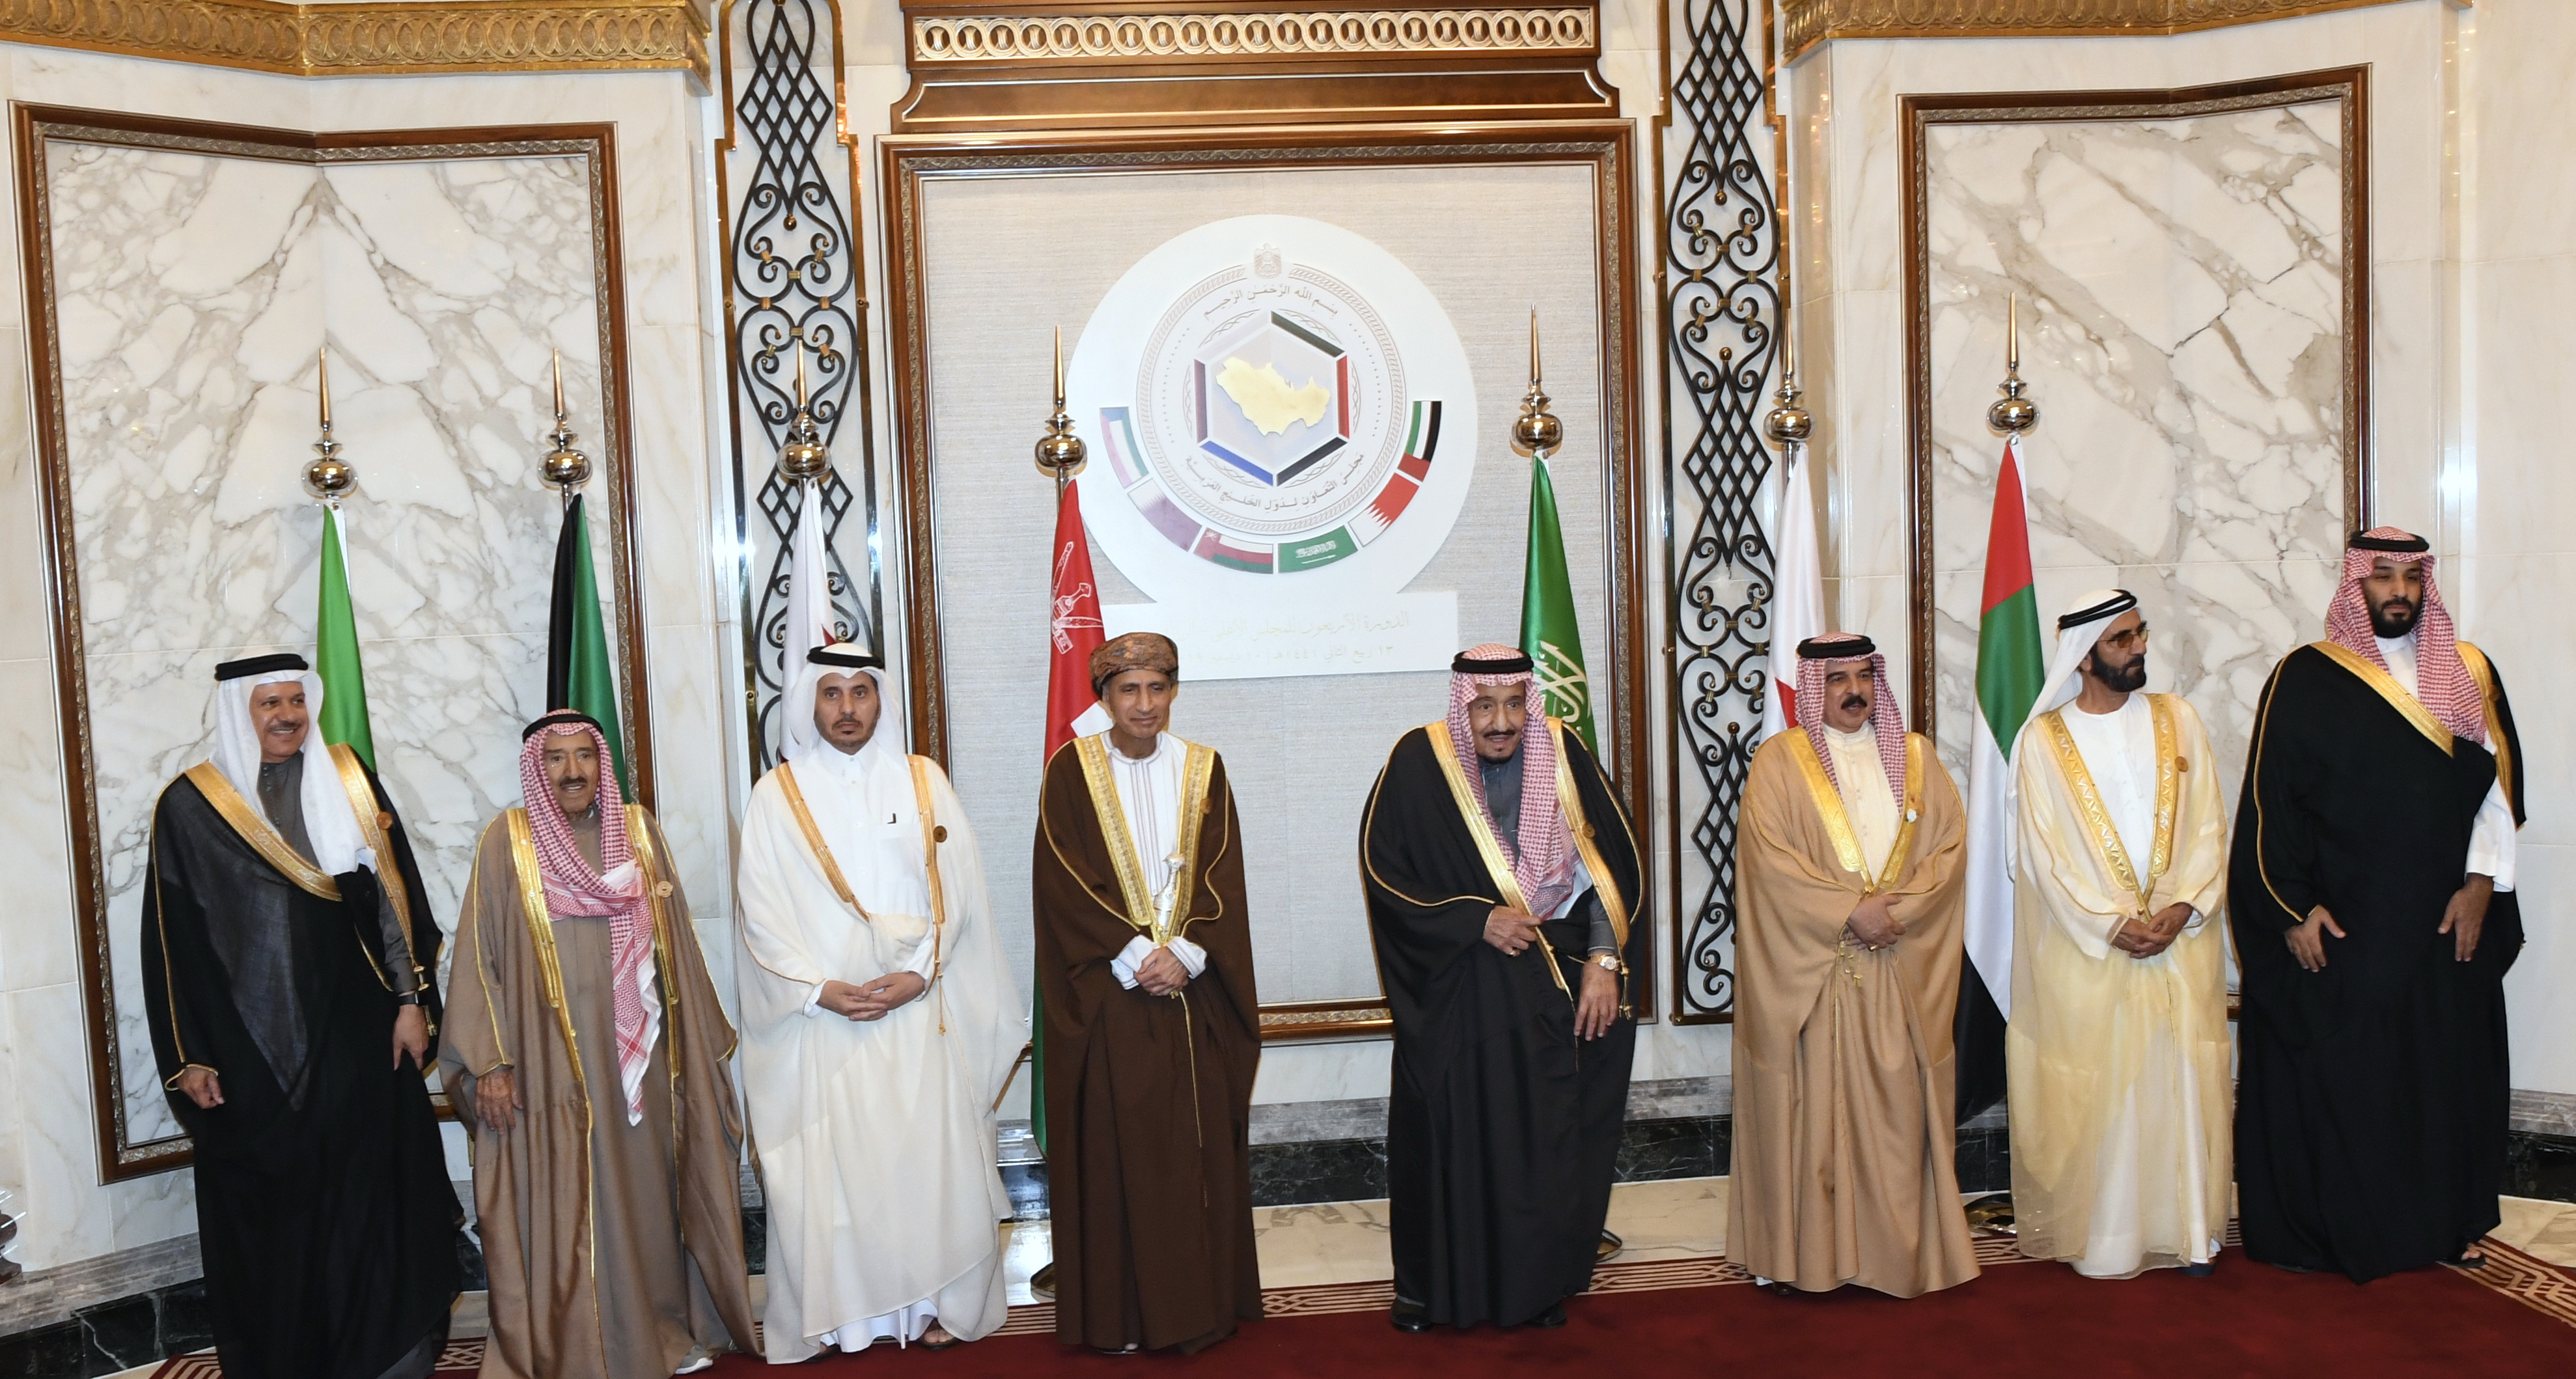 The 40th version of the GCC summit in Riyadh